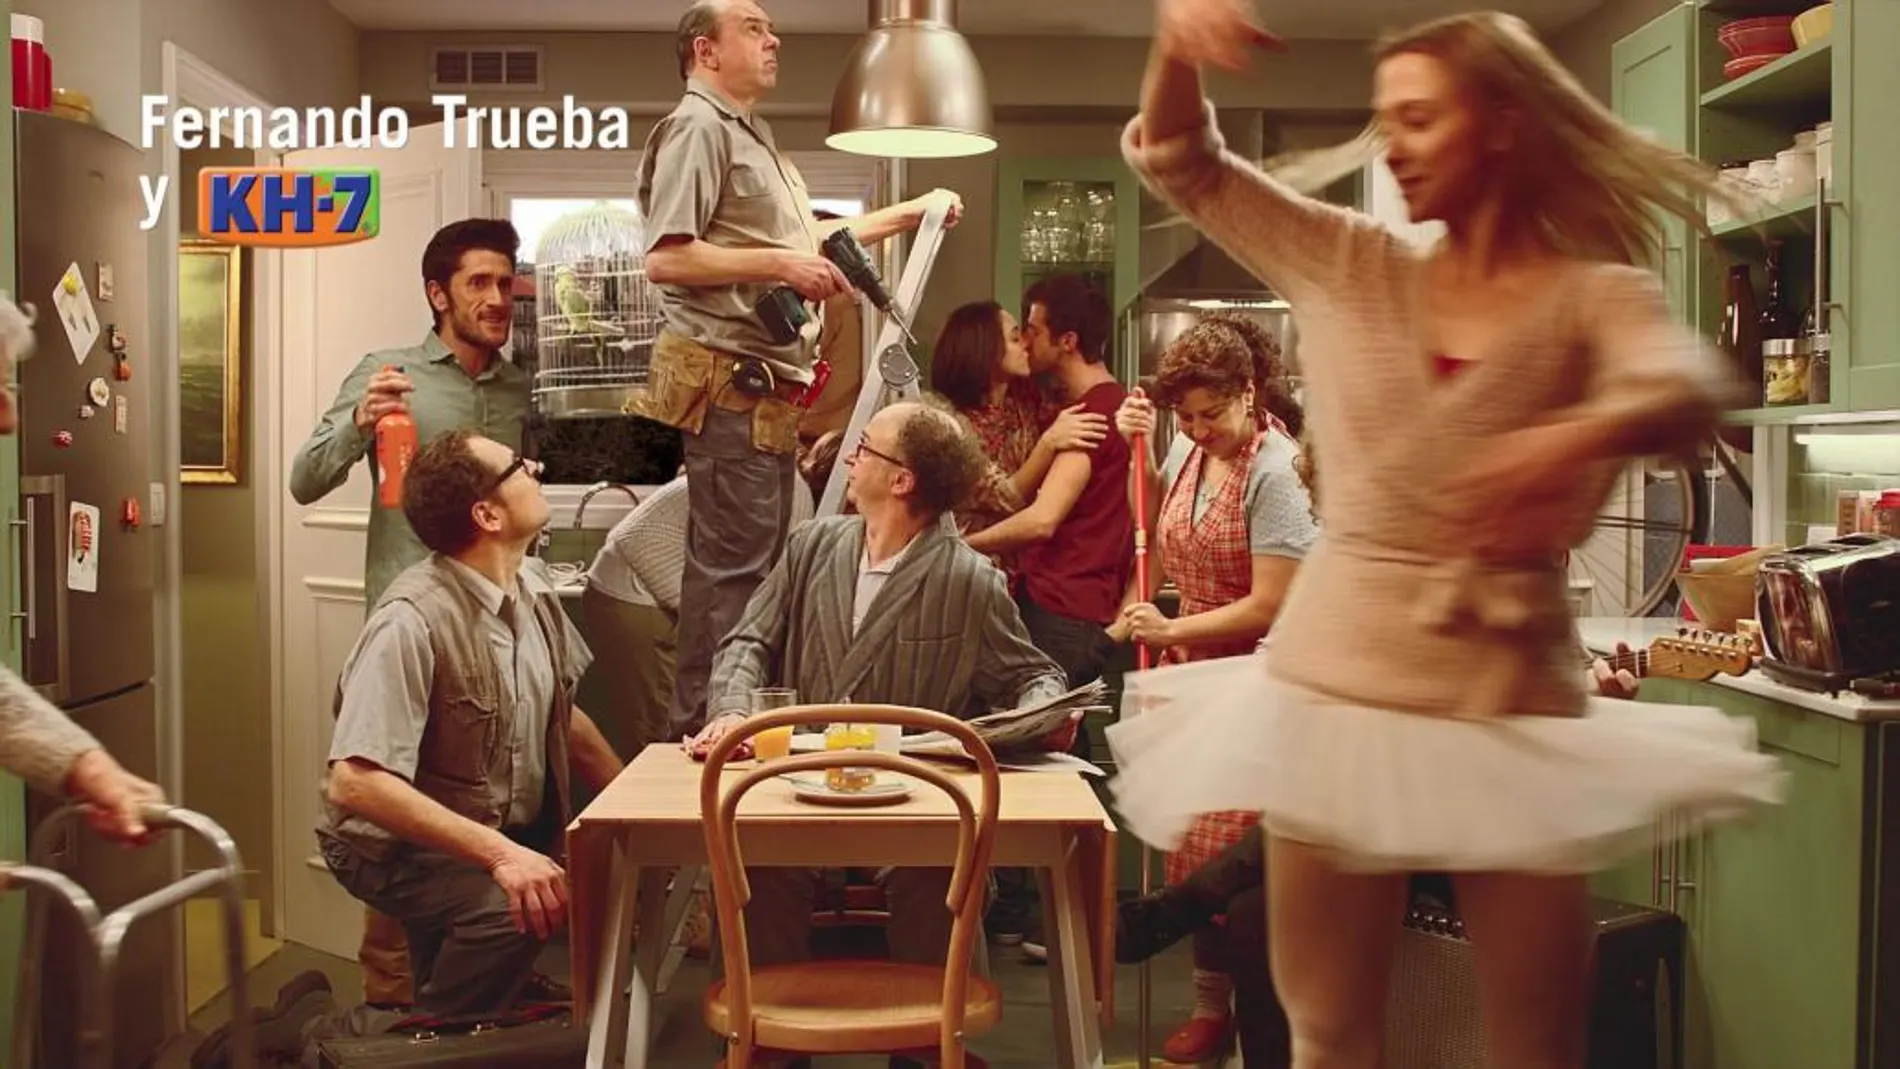 Fernando Trueba vuelve a la comedia en el nuevo anuncio de KH7